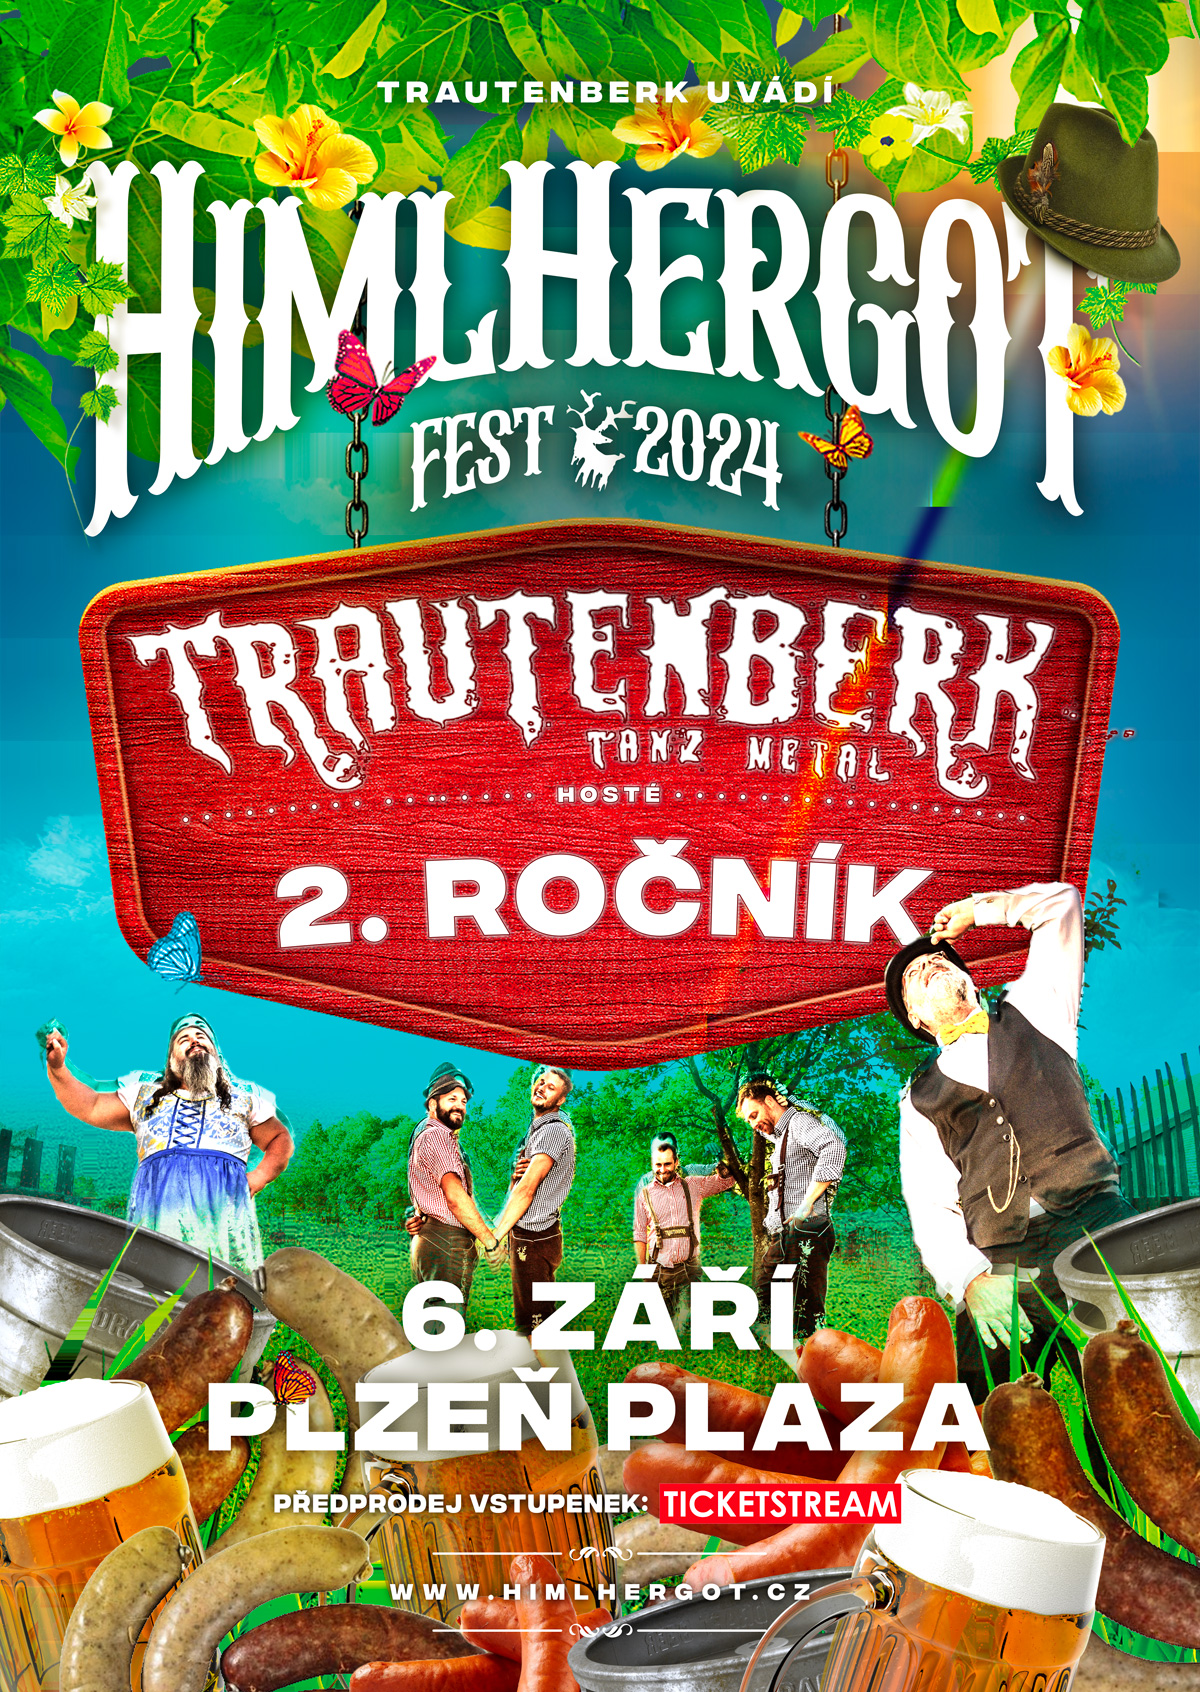 HimlHergotFest